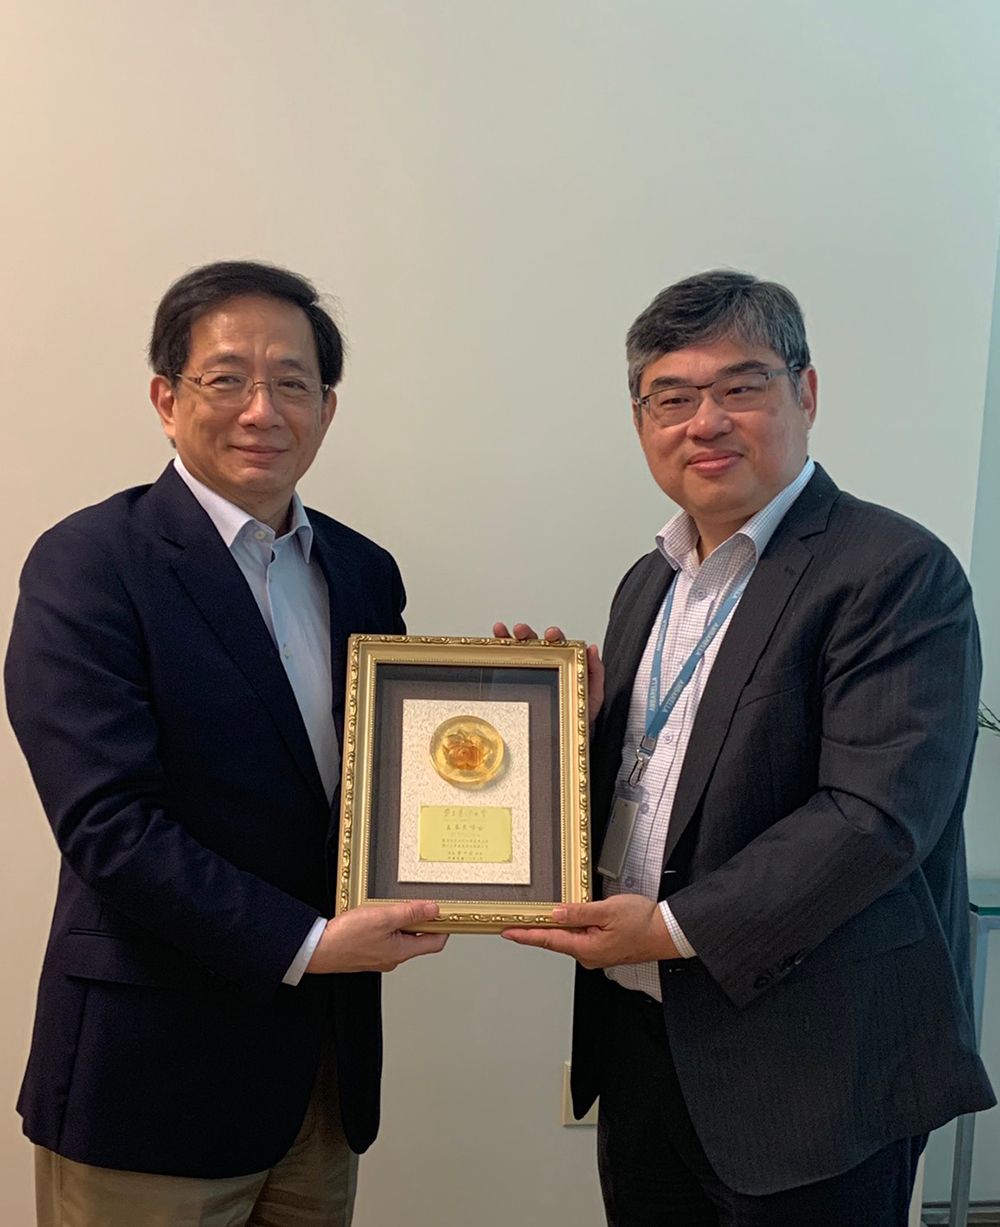 President Kuan (left) presents an appreciation plaque to alumnus Fermi Wang (right).